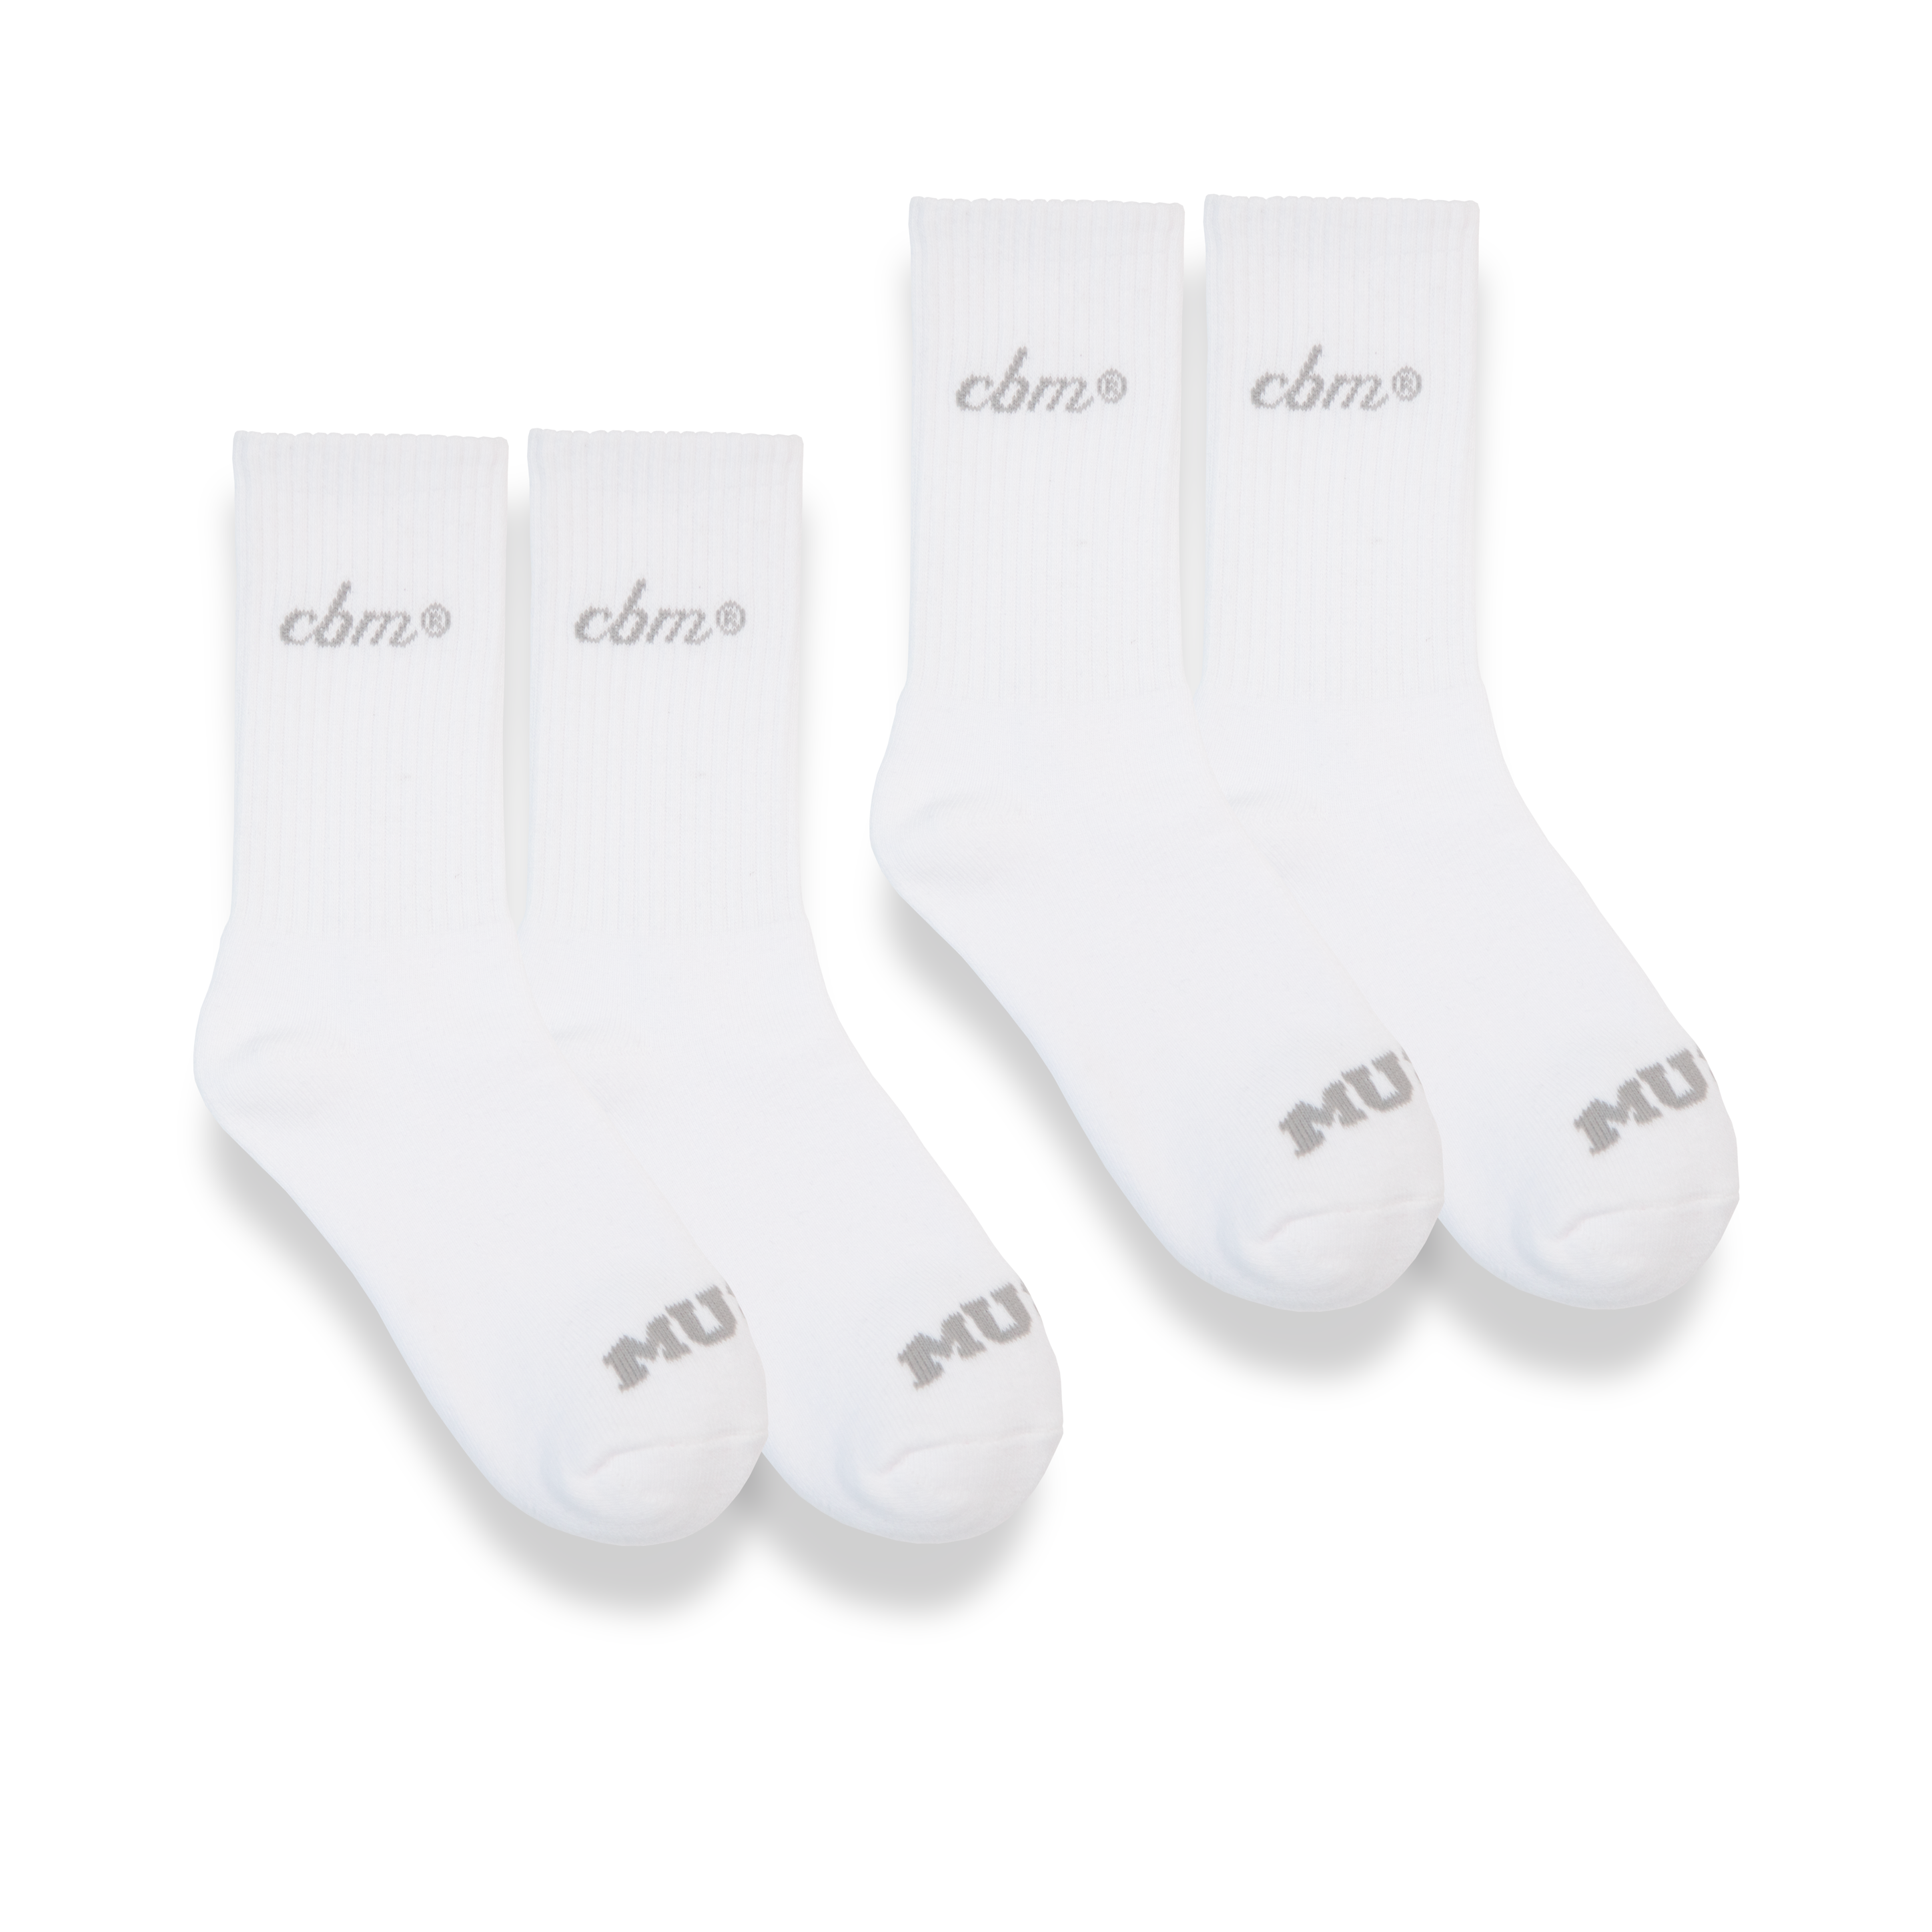 Crew socks 6" - White Pack (2)